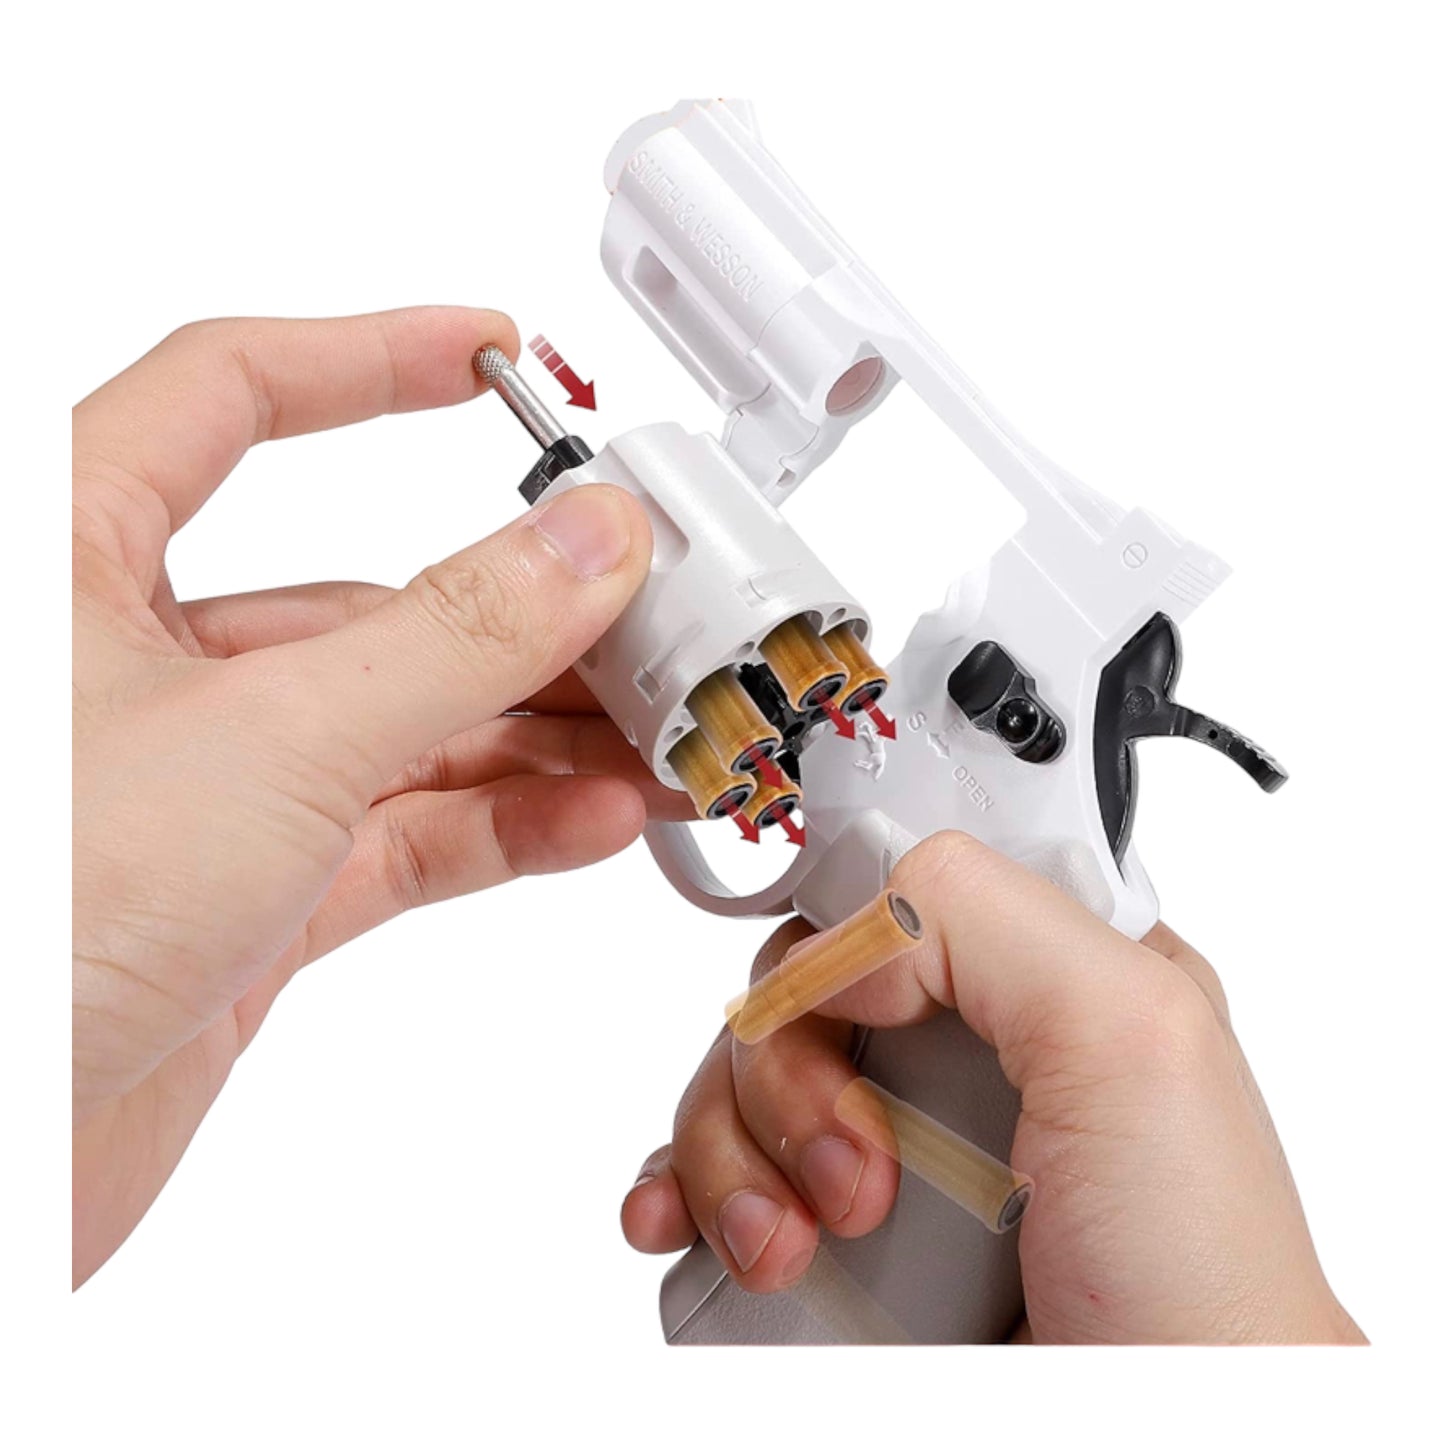 Gel Blaster Revolver Pistol Shell Ejecting Dart Blaster